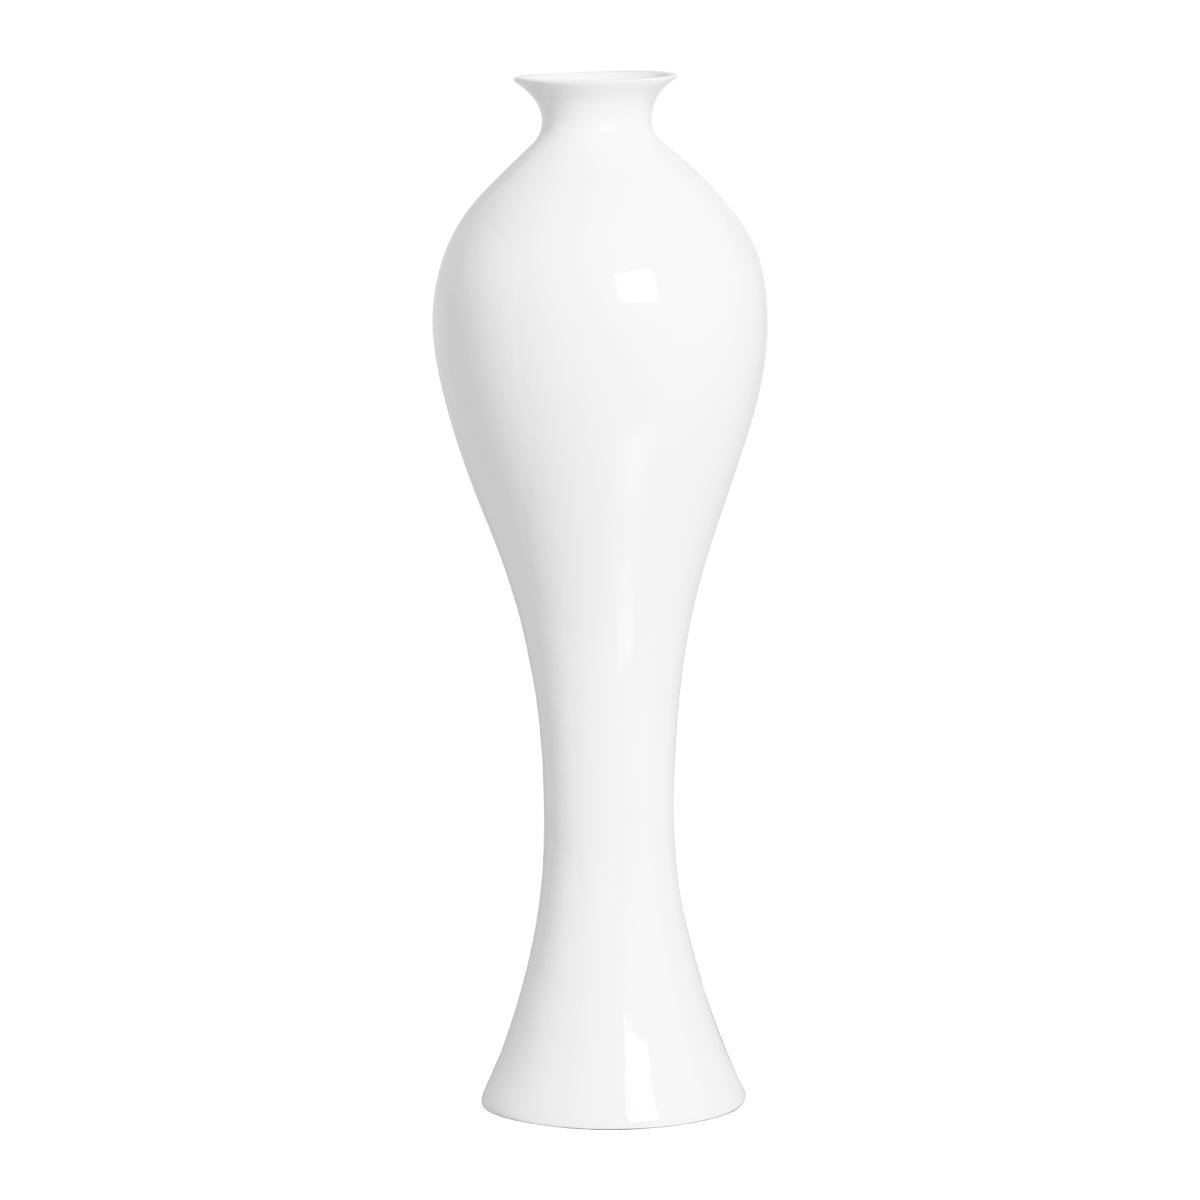 Vaso de Chão Branco Califórnia Grande Decoração em Cerâmica Clássica - 1